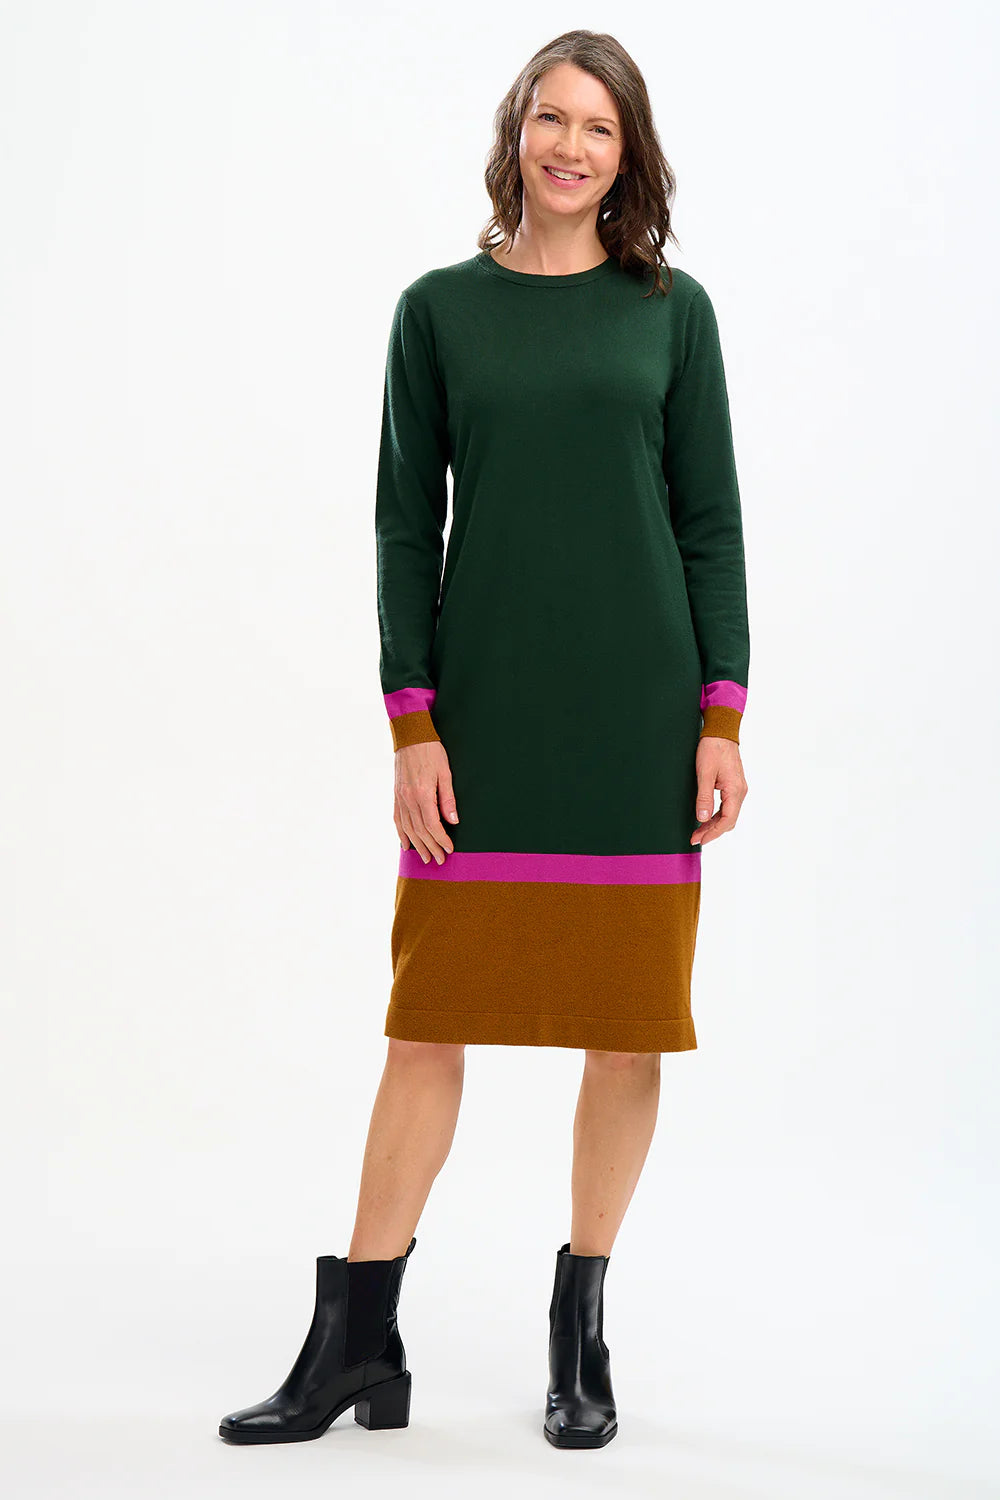 SUGARHILL BRIGHTON-Nala Midi Knit Dress - Dark Green, Autumn Colour Block